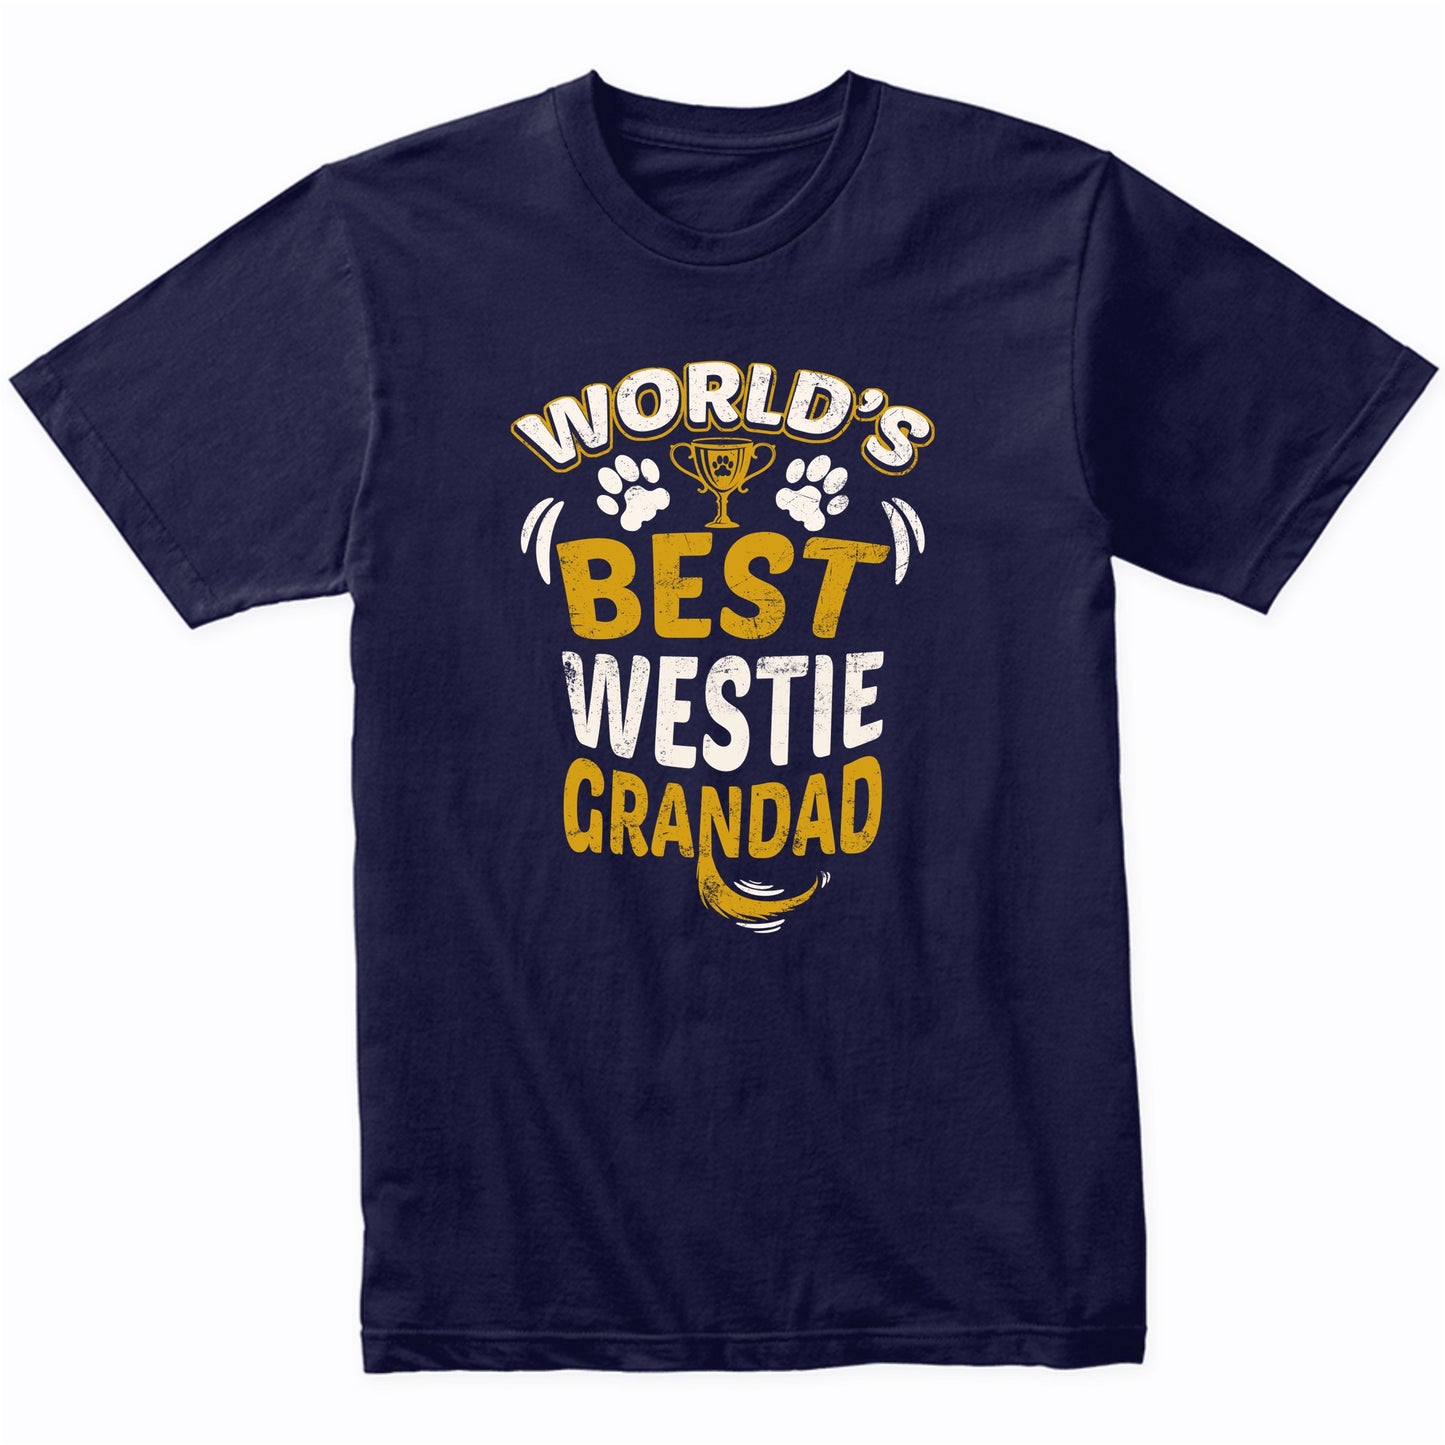 World's Best Westie Grandad Graphic T-Shirt